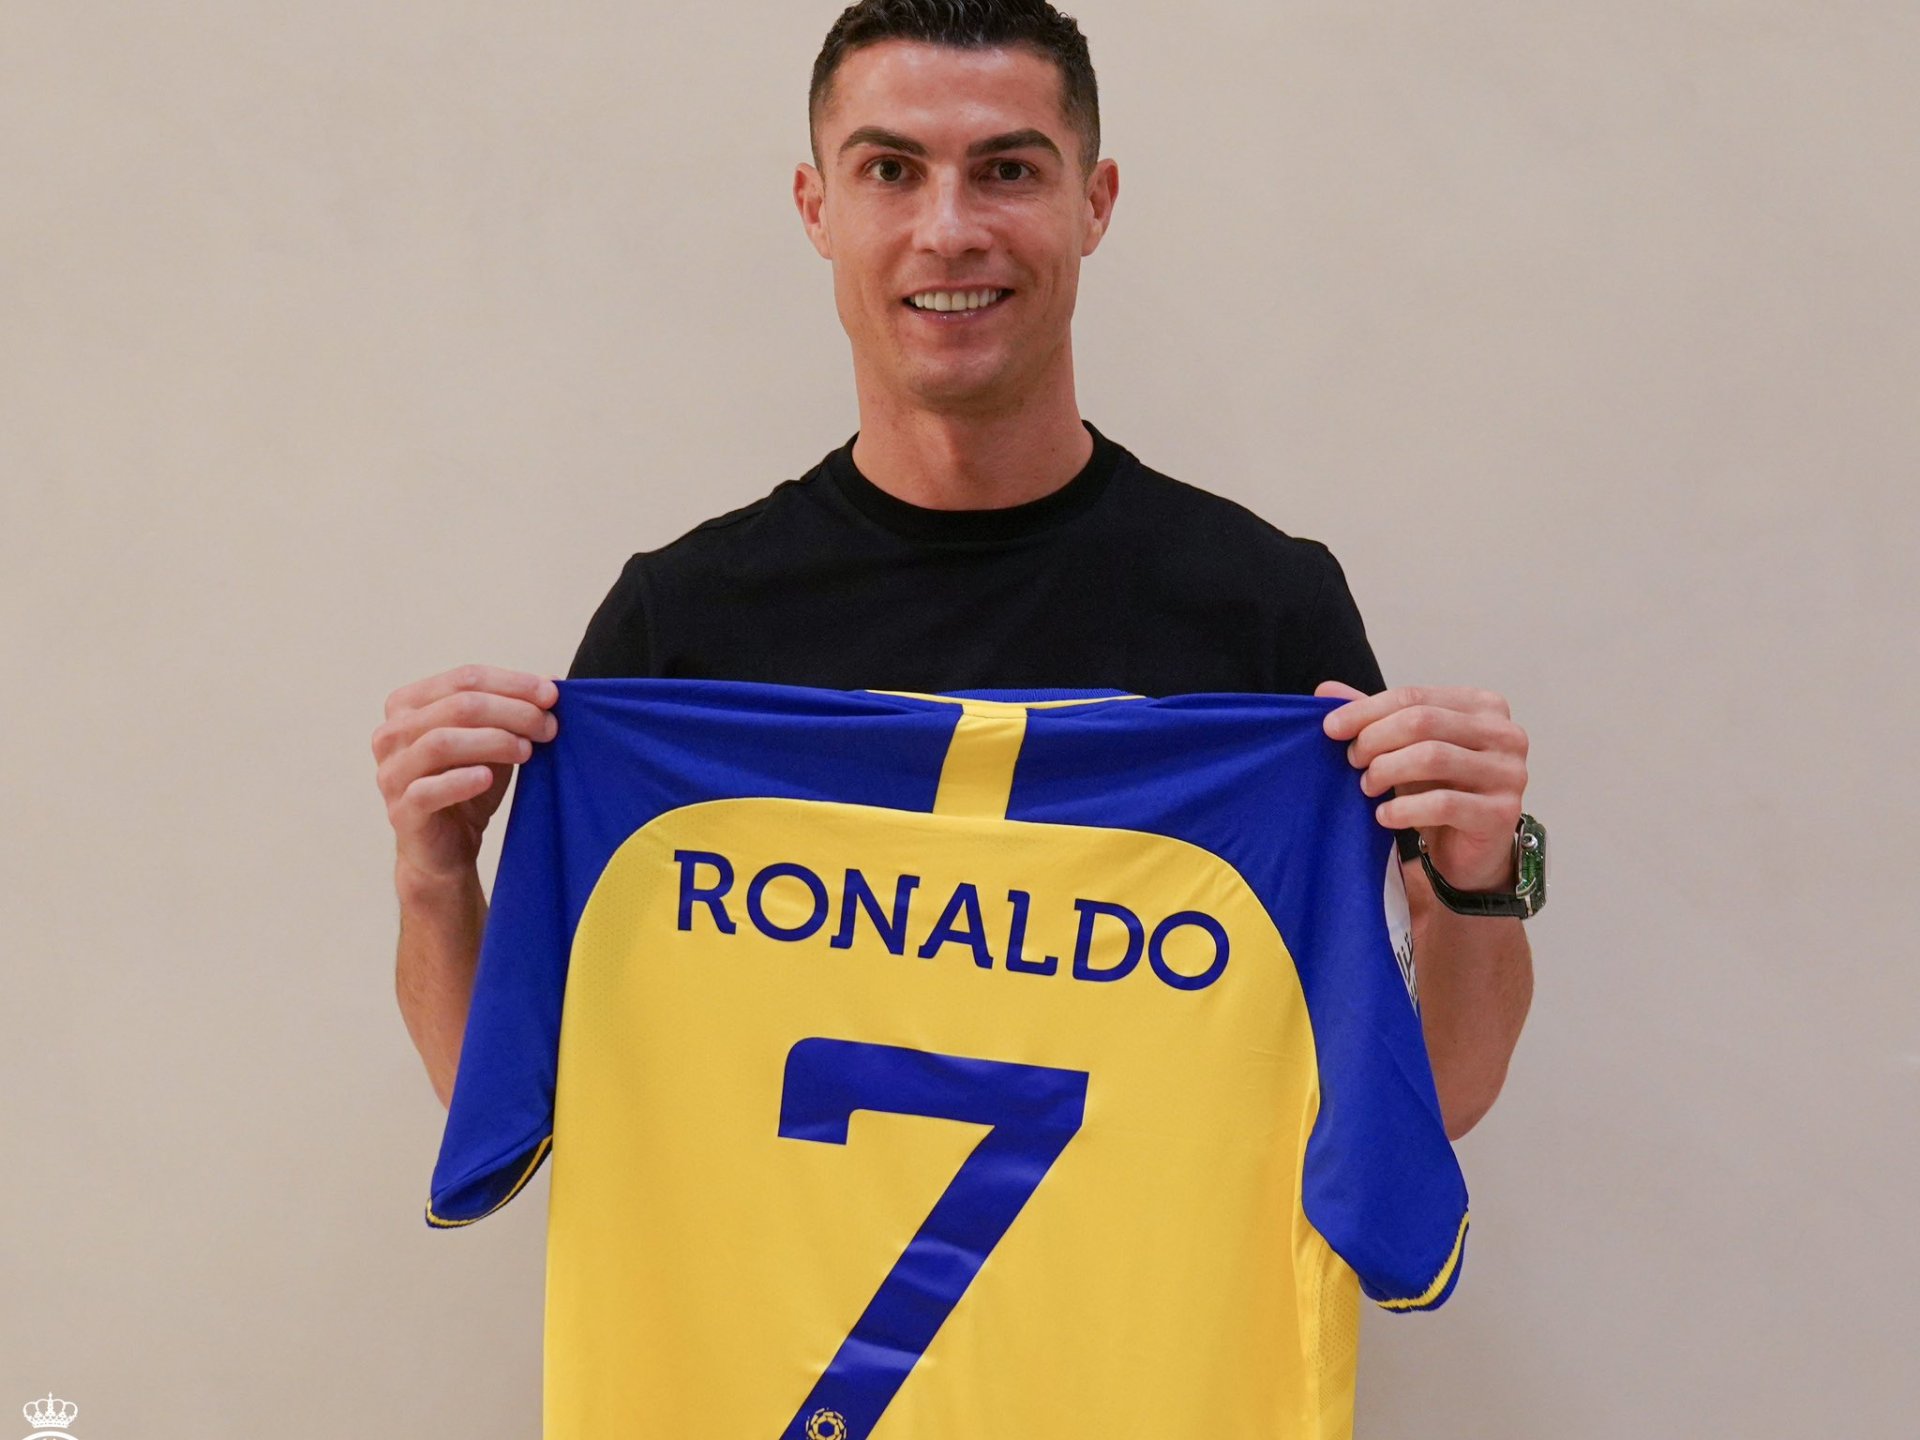 Who are Al Nassr, Cristiano Ronaldo’s new team?